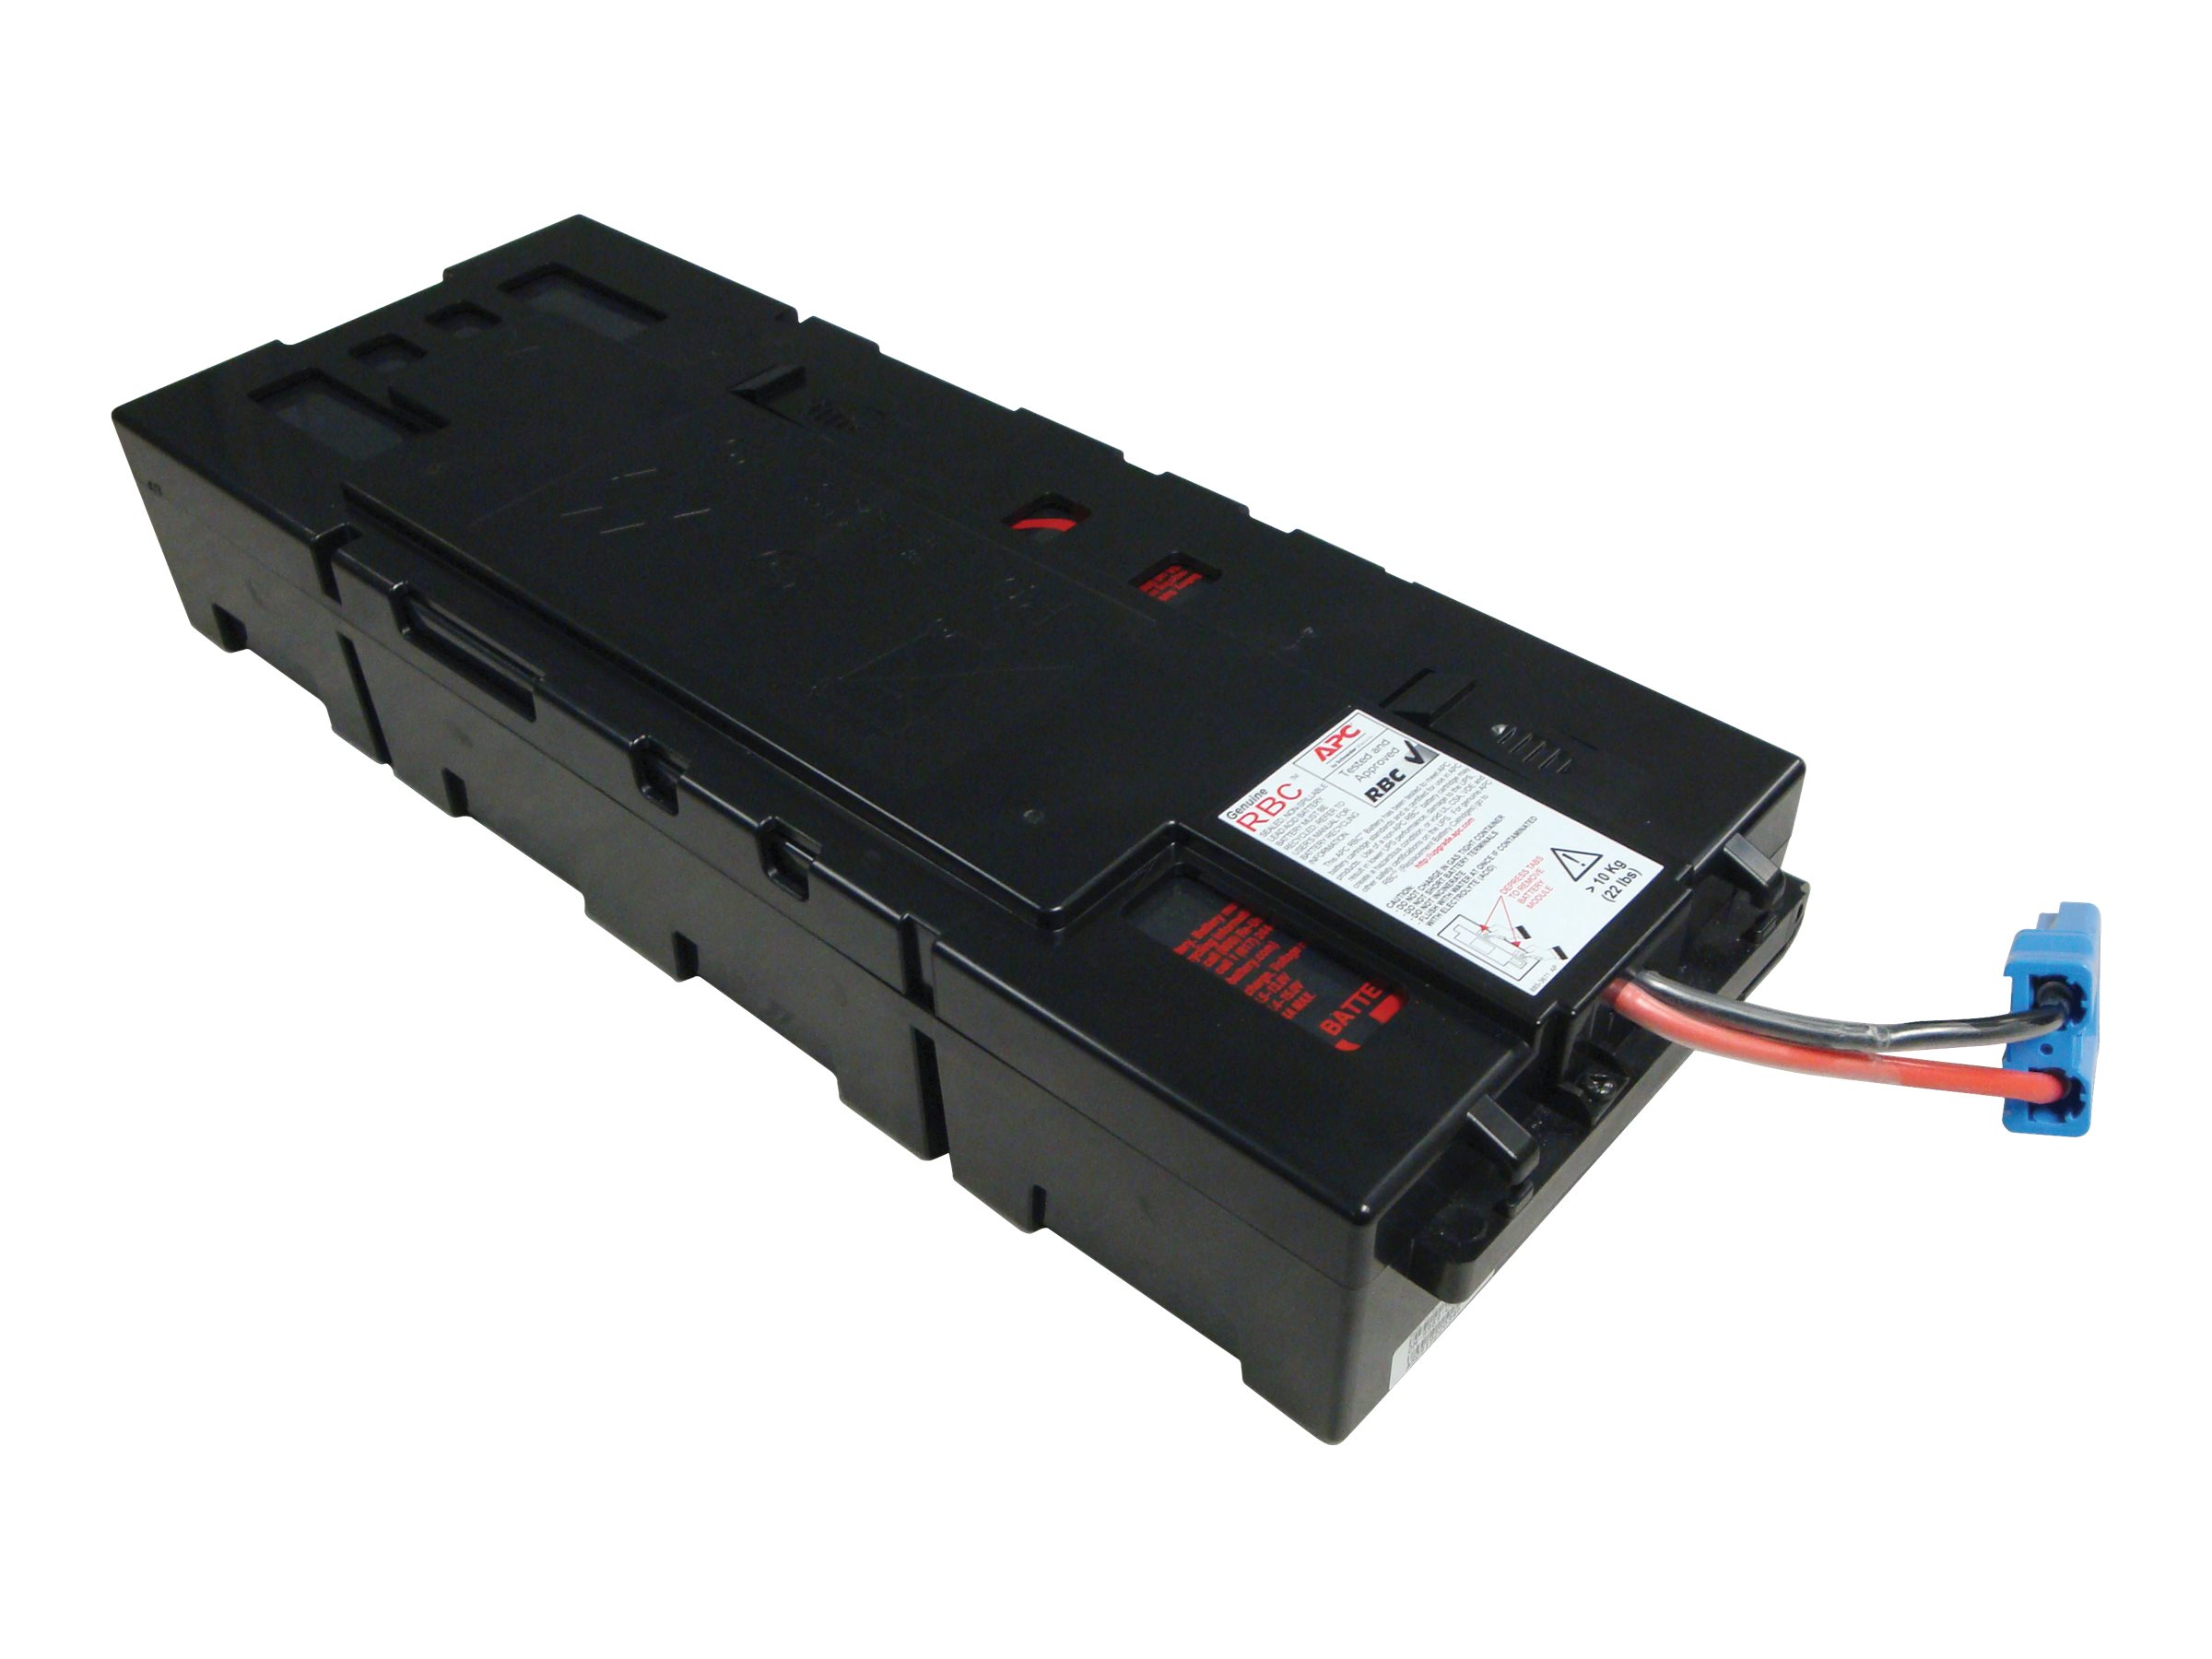 APC Replacement Battery Cartridge #115 - USV-Akku - 1 x Batterie - Bleisäure - Schwarz - für P/N: SMX1500RM2UC, SMX1500RM2UCNC, SMX1500RMNCUS, SMX1500RMUS, SMX48RMBP2US